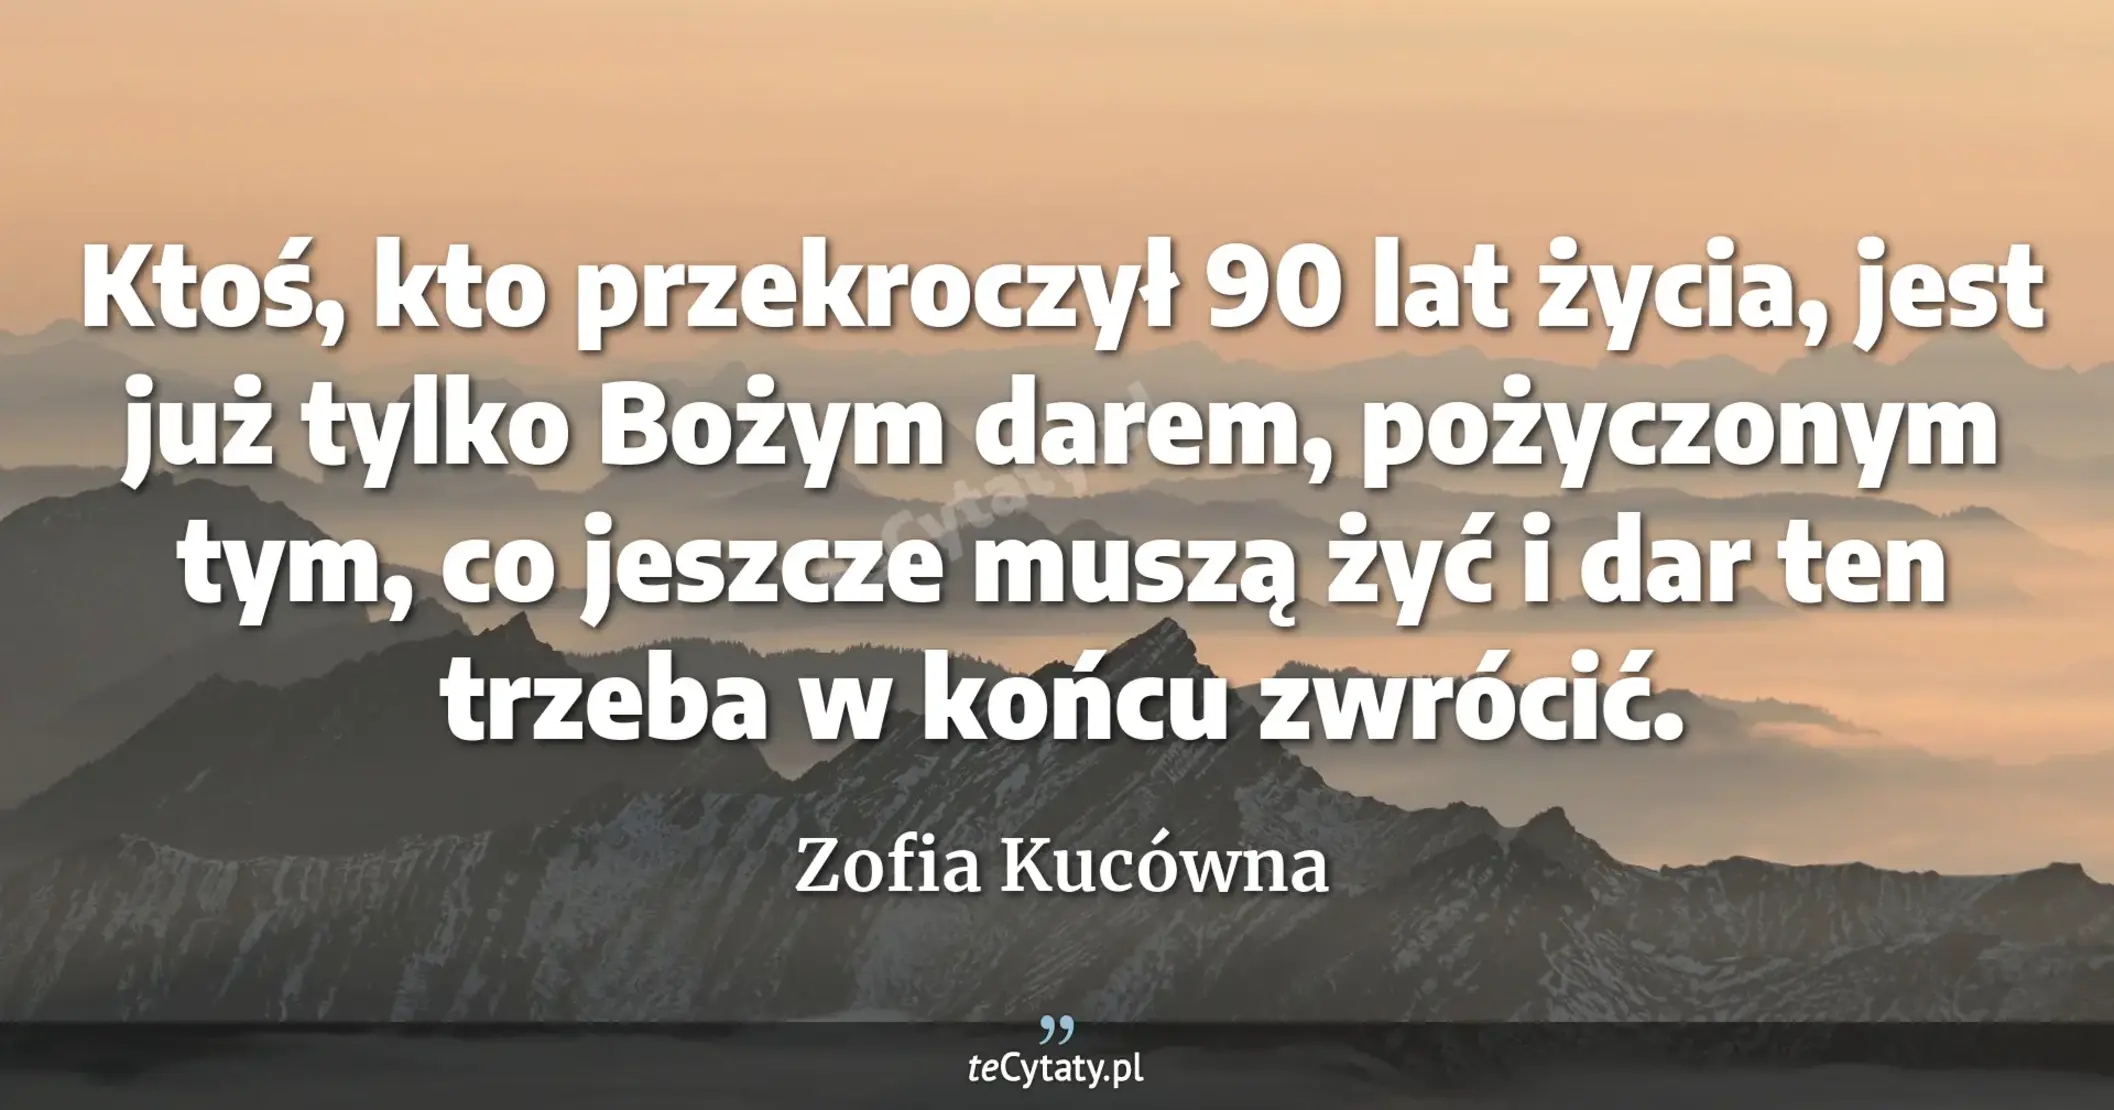 Ktoś, kto przekroczył 90 lat życia, jest już tylko Bożym darem, pożyczonym tym, co jeszcze muszą żyć i dar ten trzeba w końcu zwrócić. - Zofia Kucówna